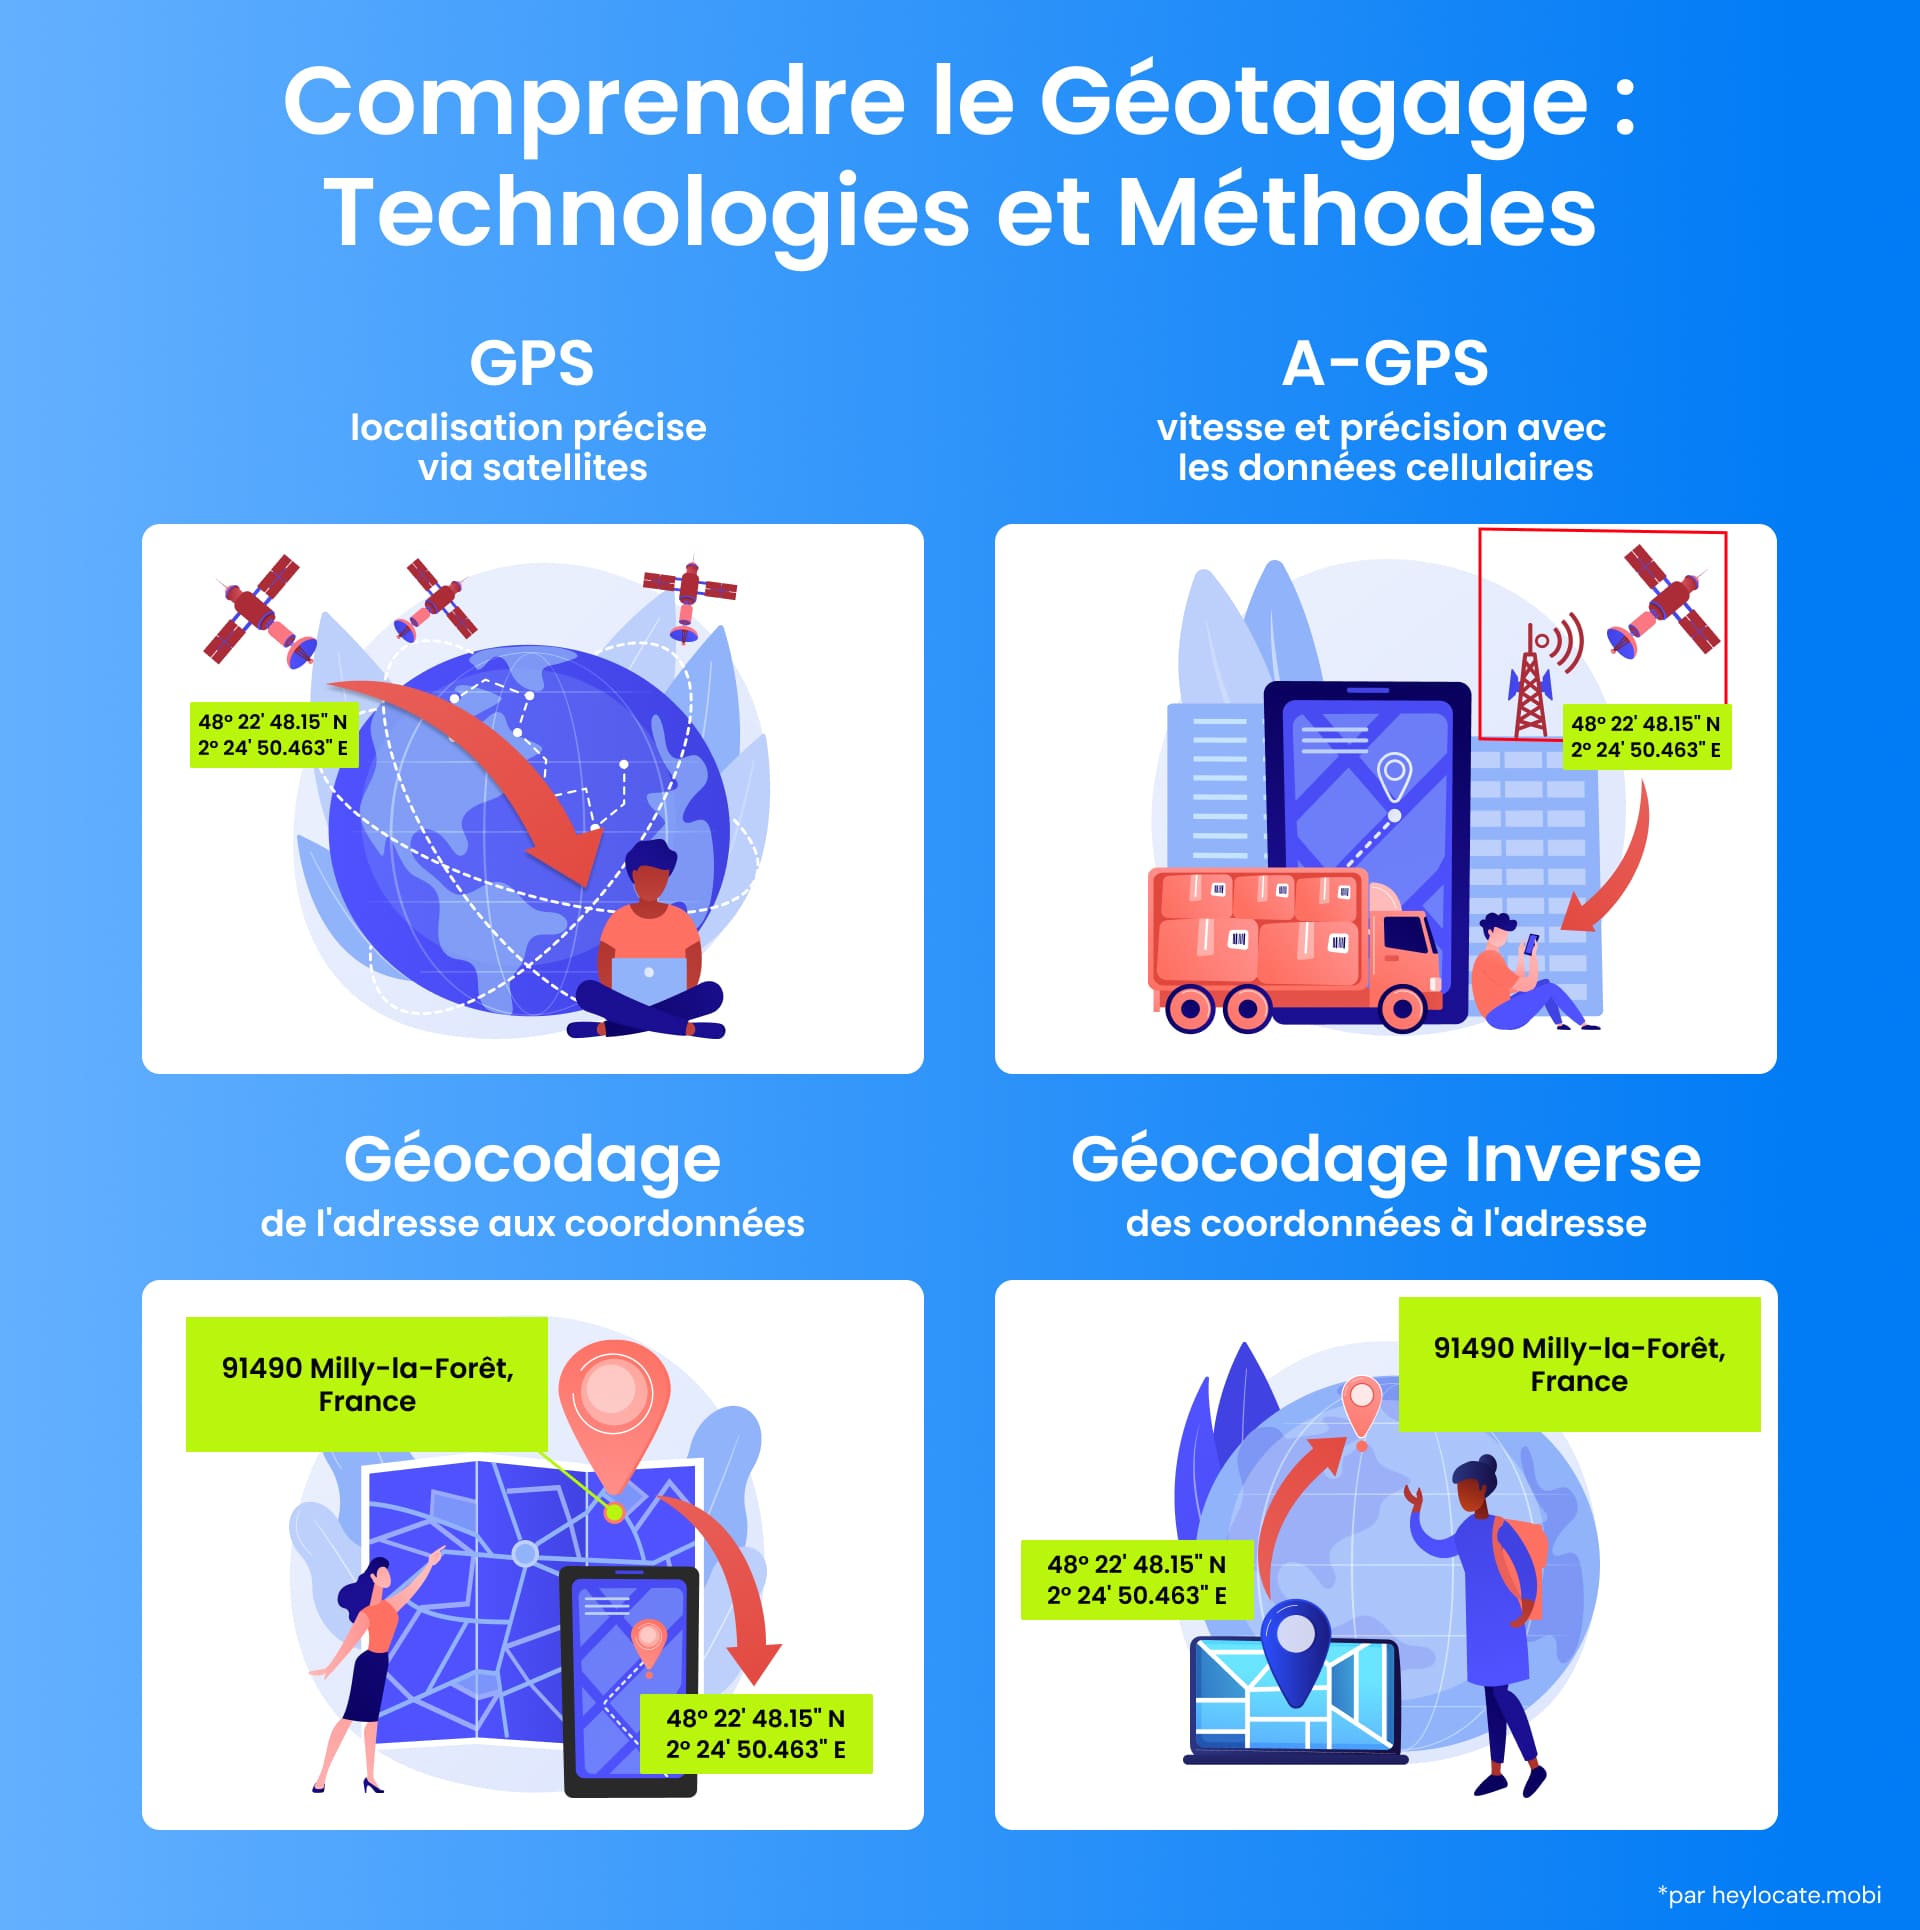 Infographie présentant les technologies GPS et A-GPS, les processus de géocodage et de géocodage inversé avec des exemples visuels.